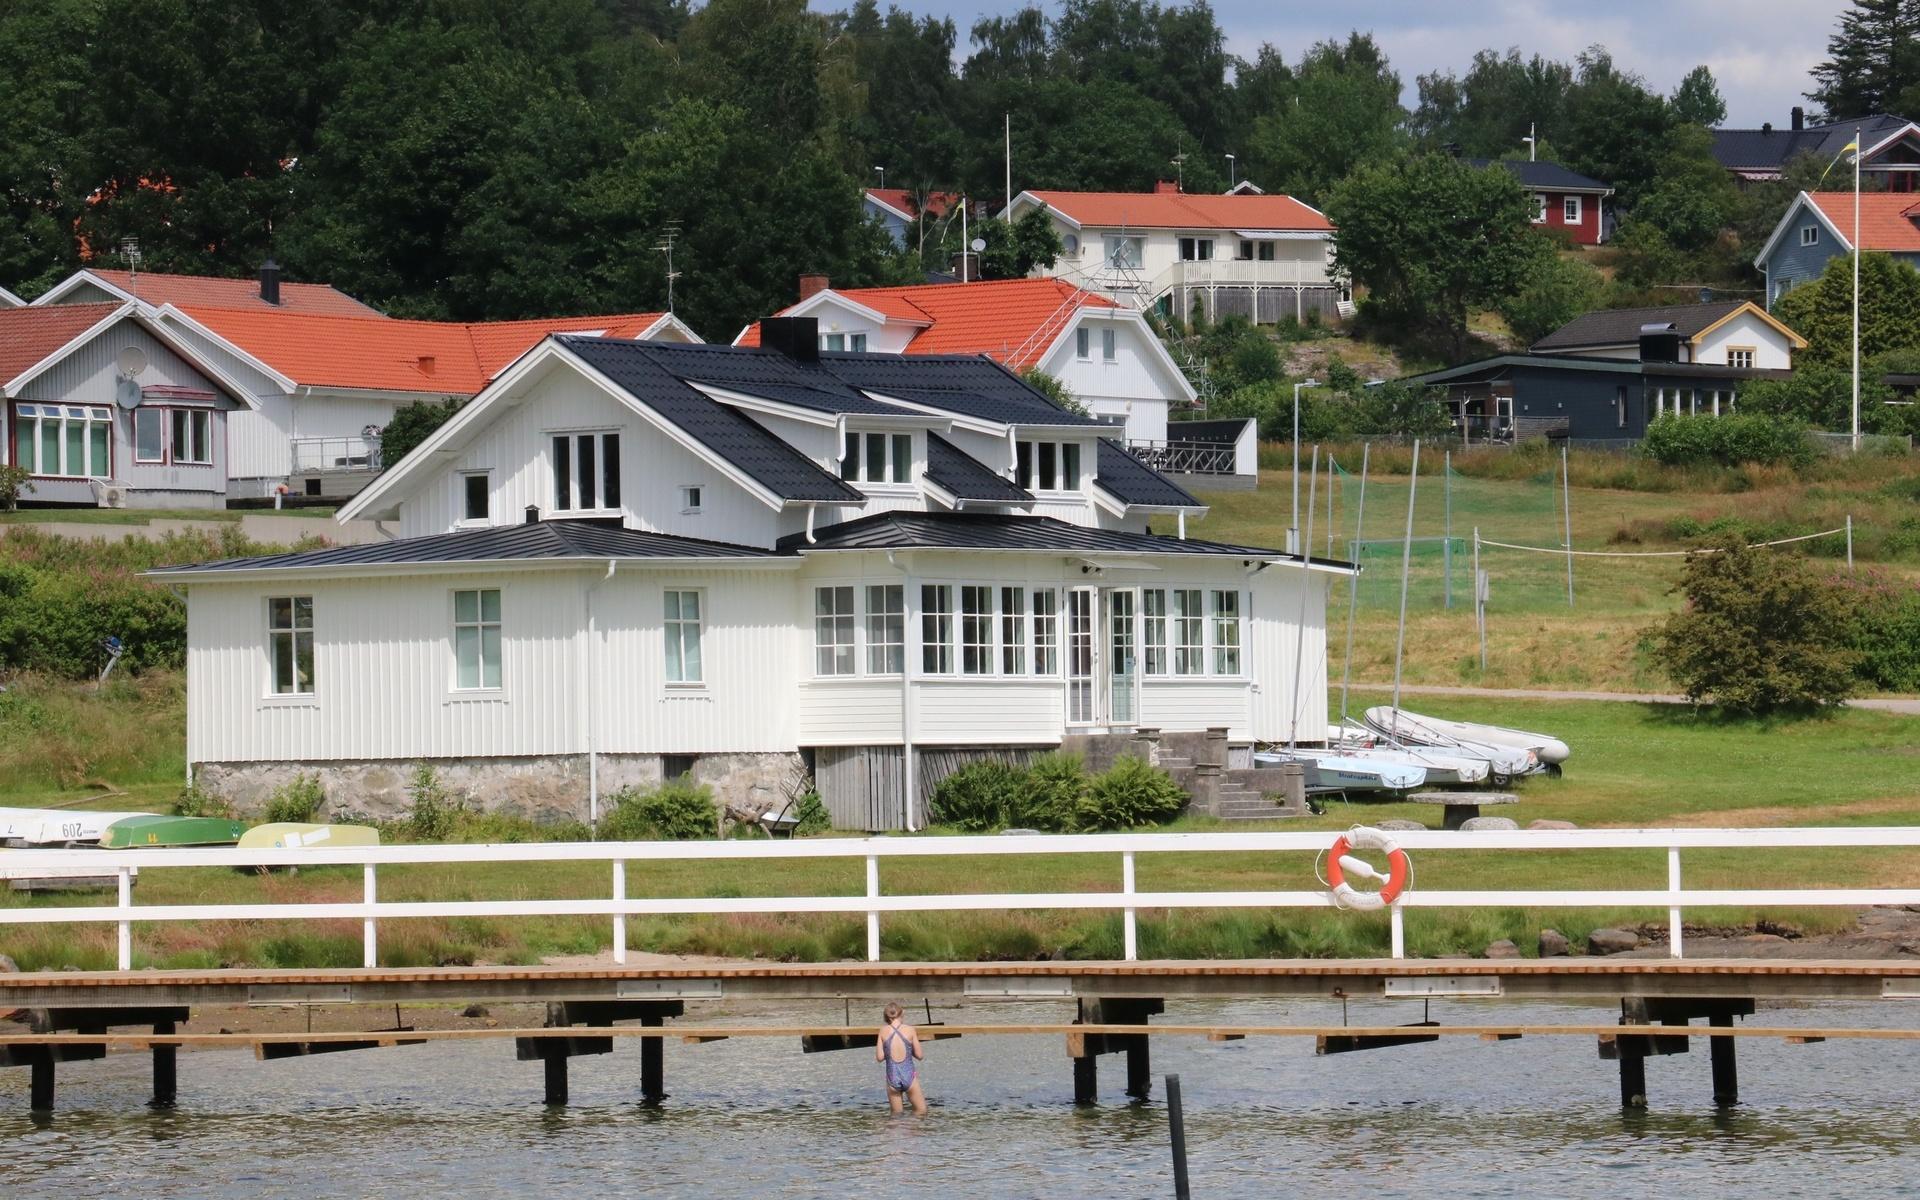 Warmanska villan ligger vackert intill Svanesunds badplats. Här vill Föreningen Svanesund skapa en verksamhet åter om, men får nu avstå på grund av en hyra på 82 000 kronor om året. 